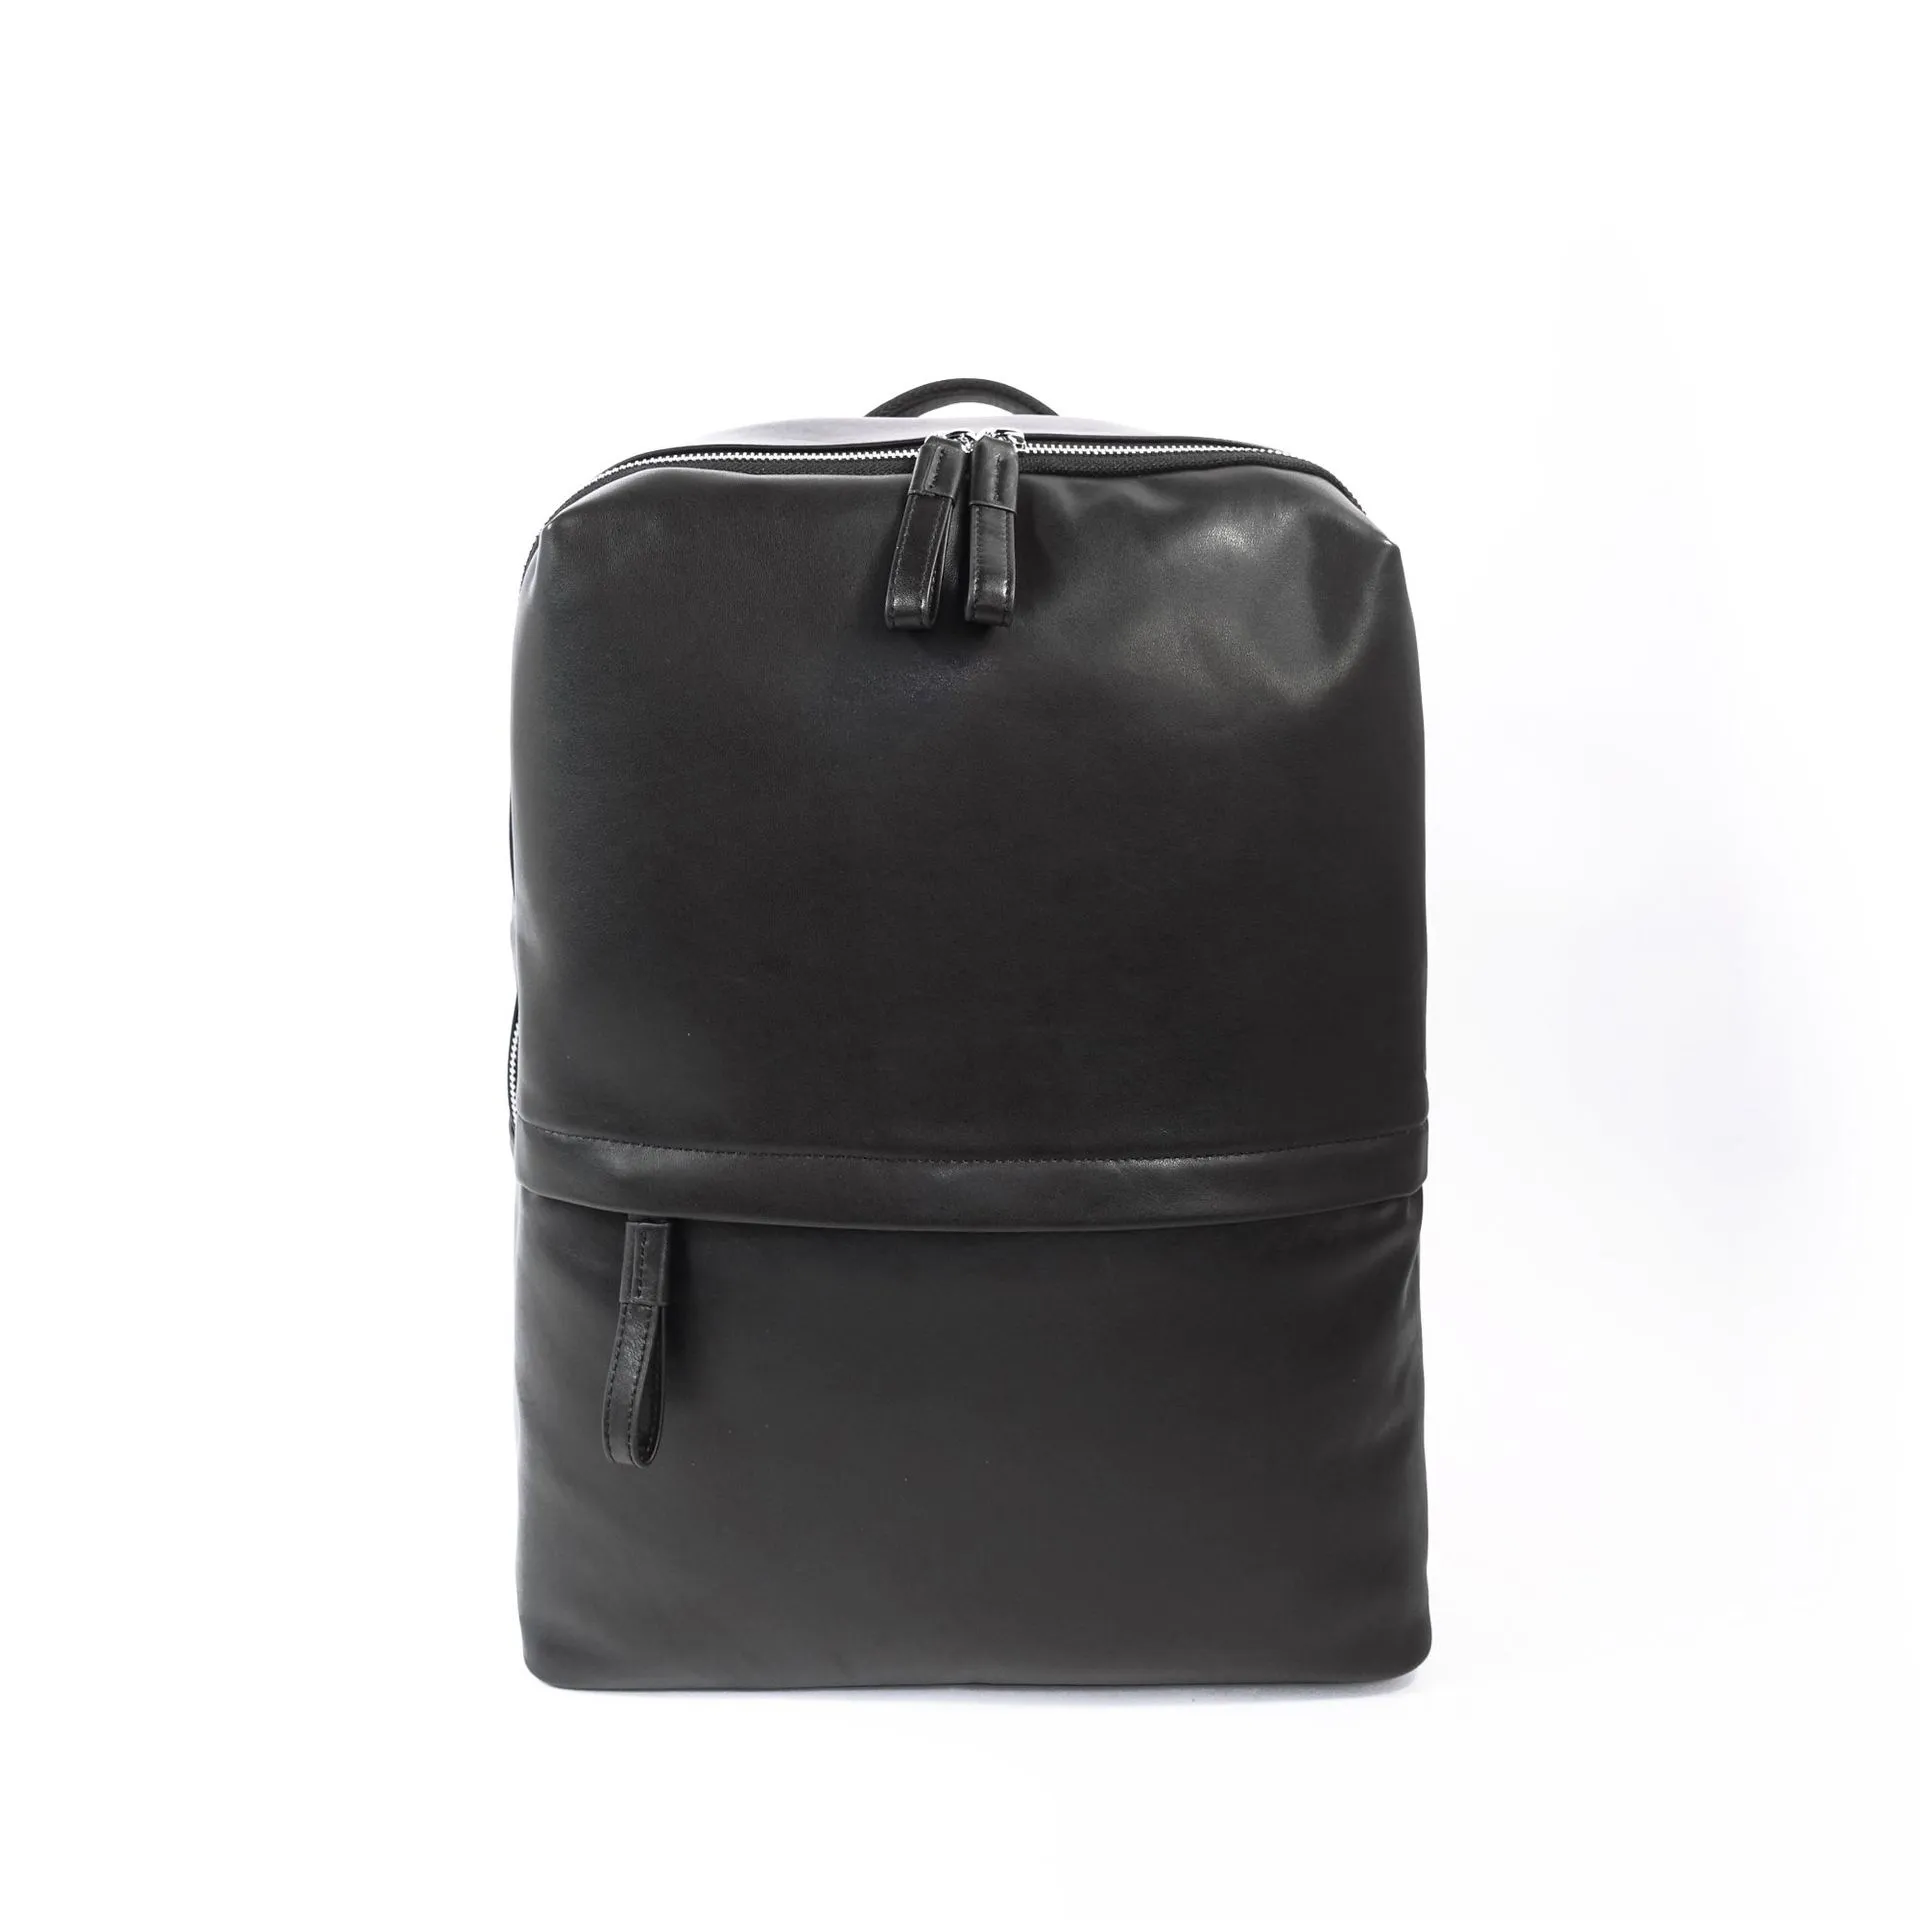 Mala de viagem Carry Ontravel Bag Carry-onDesigner bolsas de luxo bolsas bolsa de couro bolsa de ombro grande mochila sacos